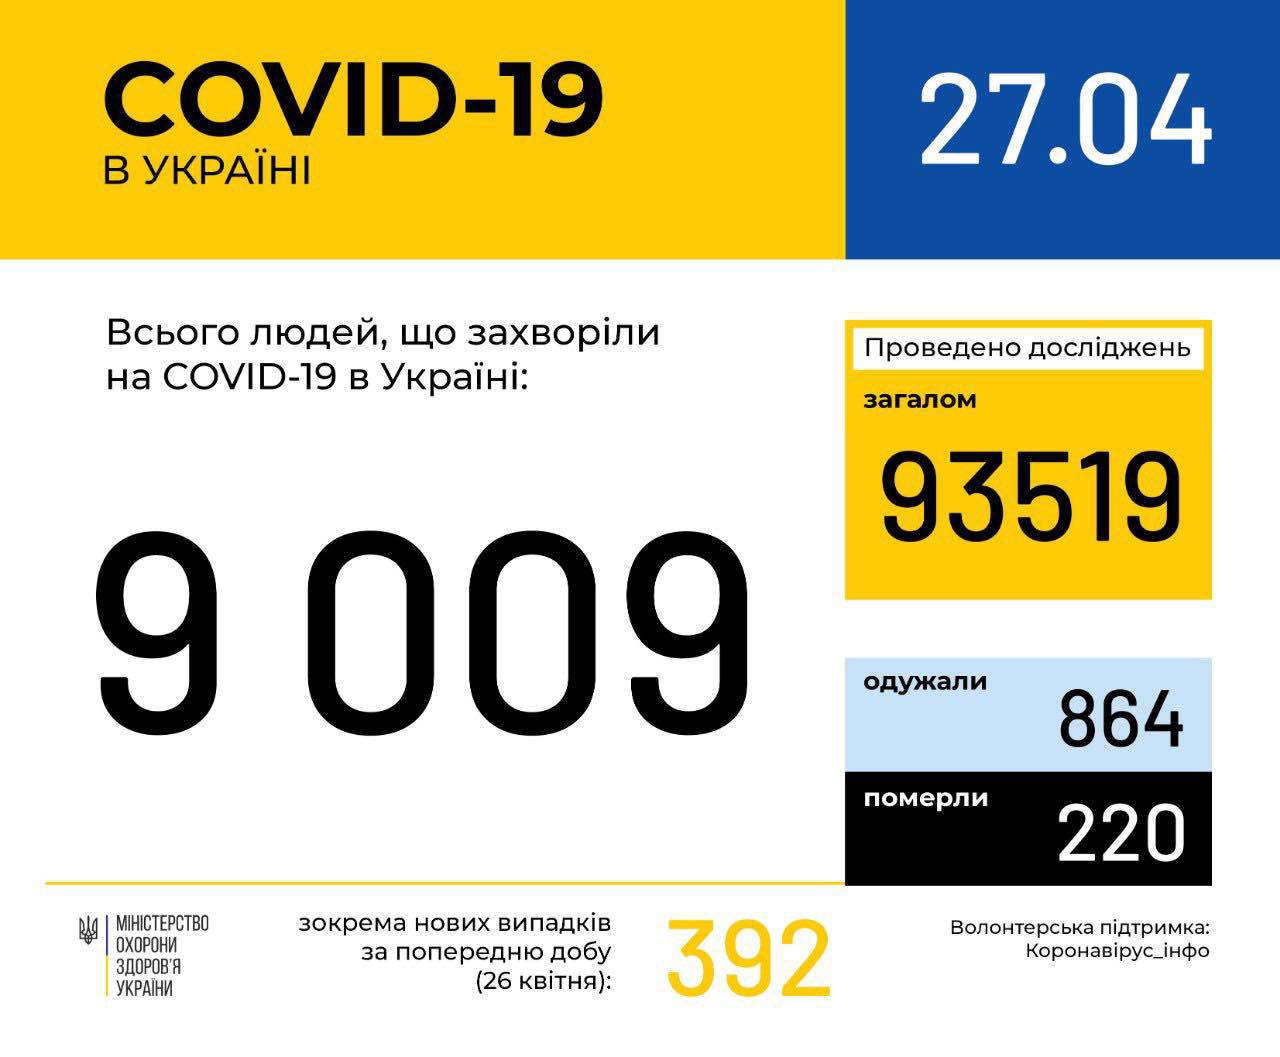 В Україні зафіксовано 9009 випадків коронавірусної хвороби COVID-19, - МОЗ